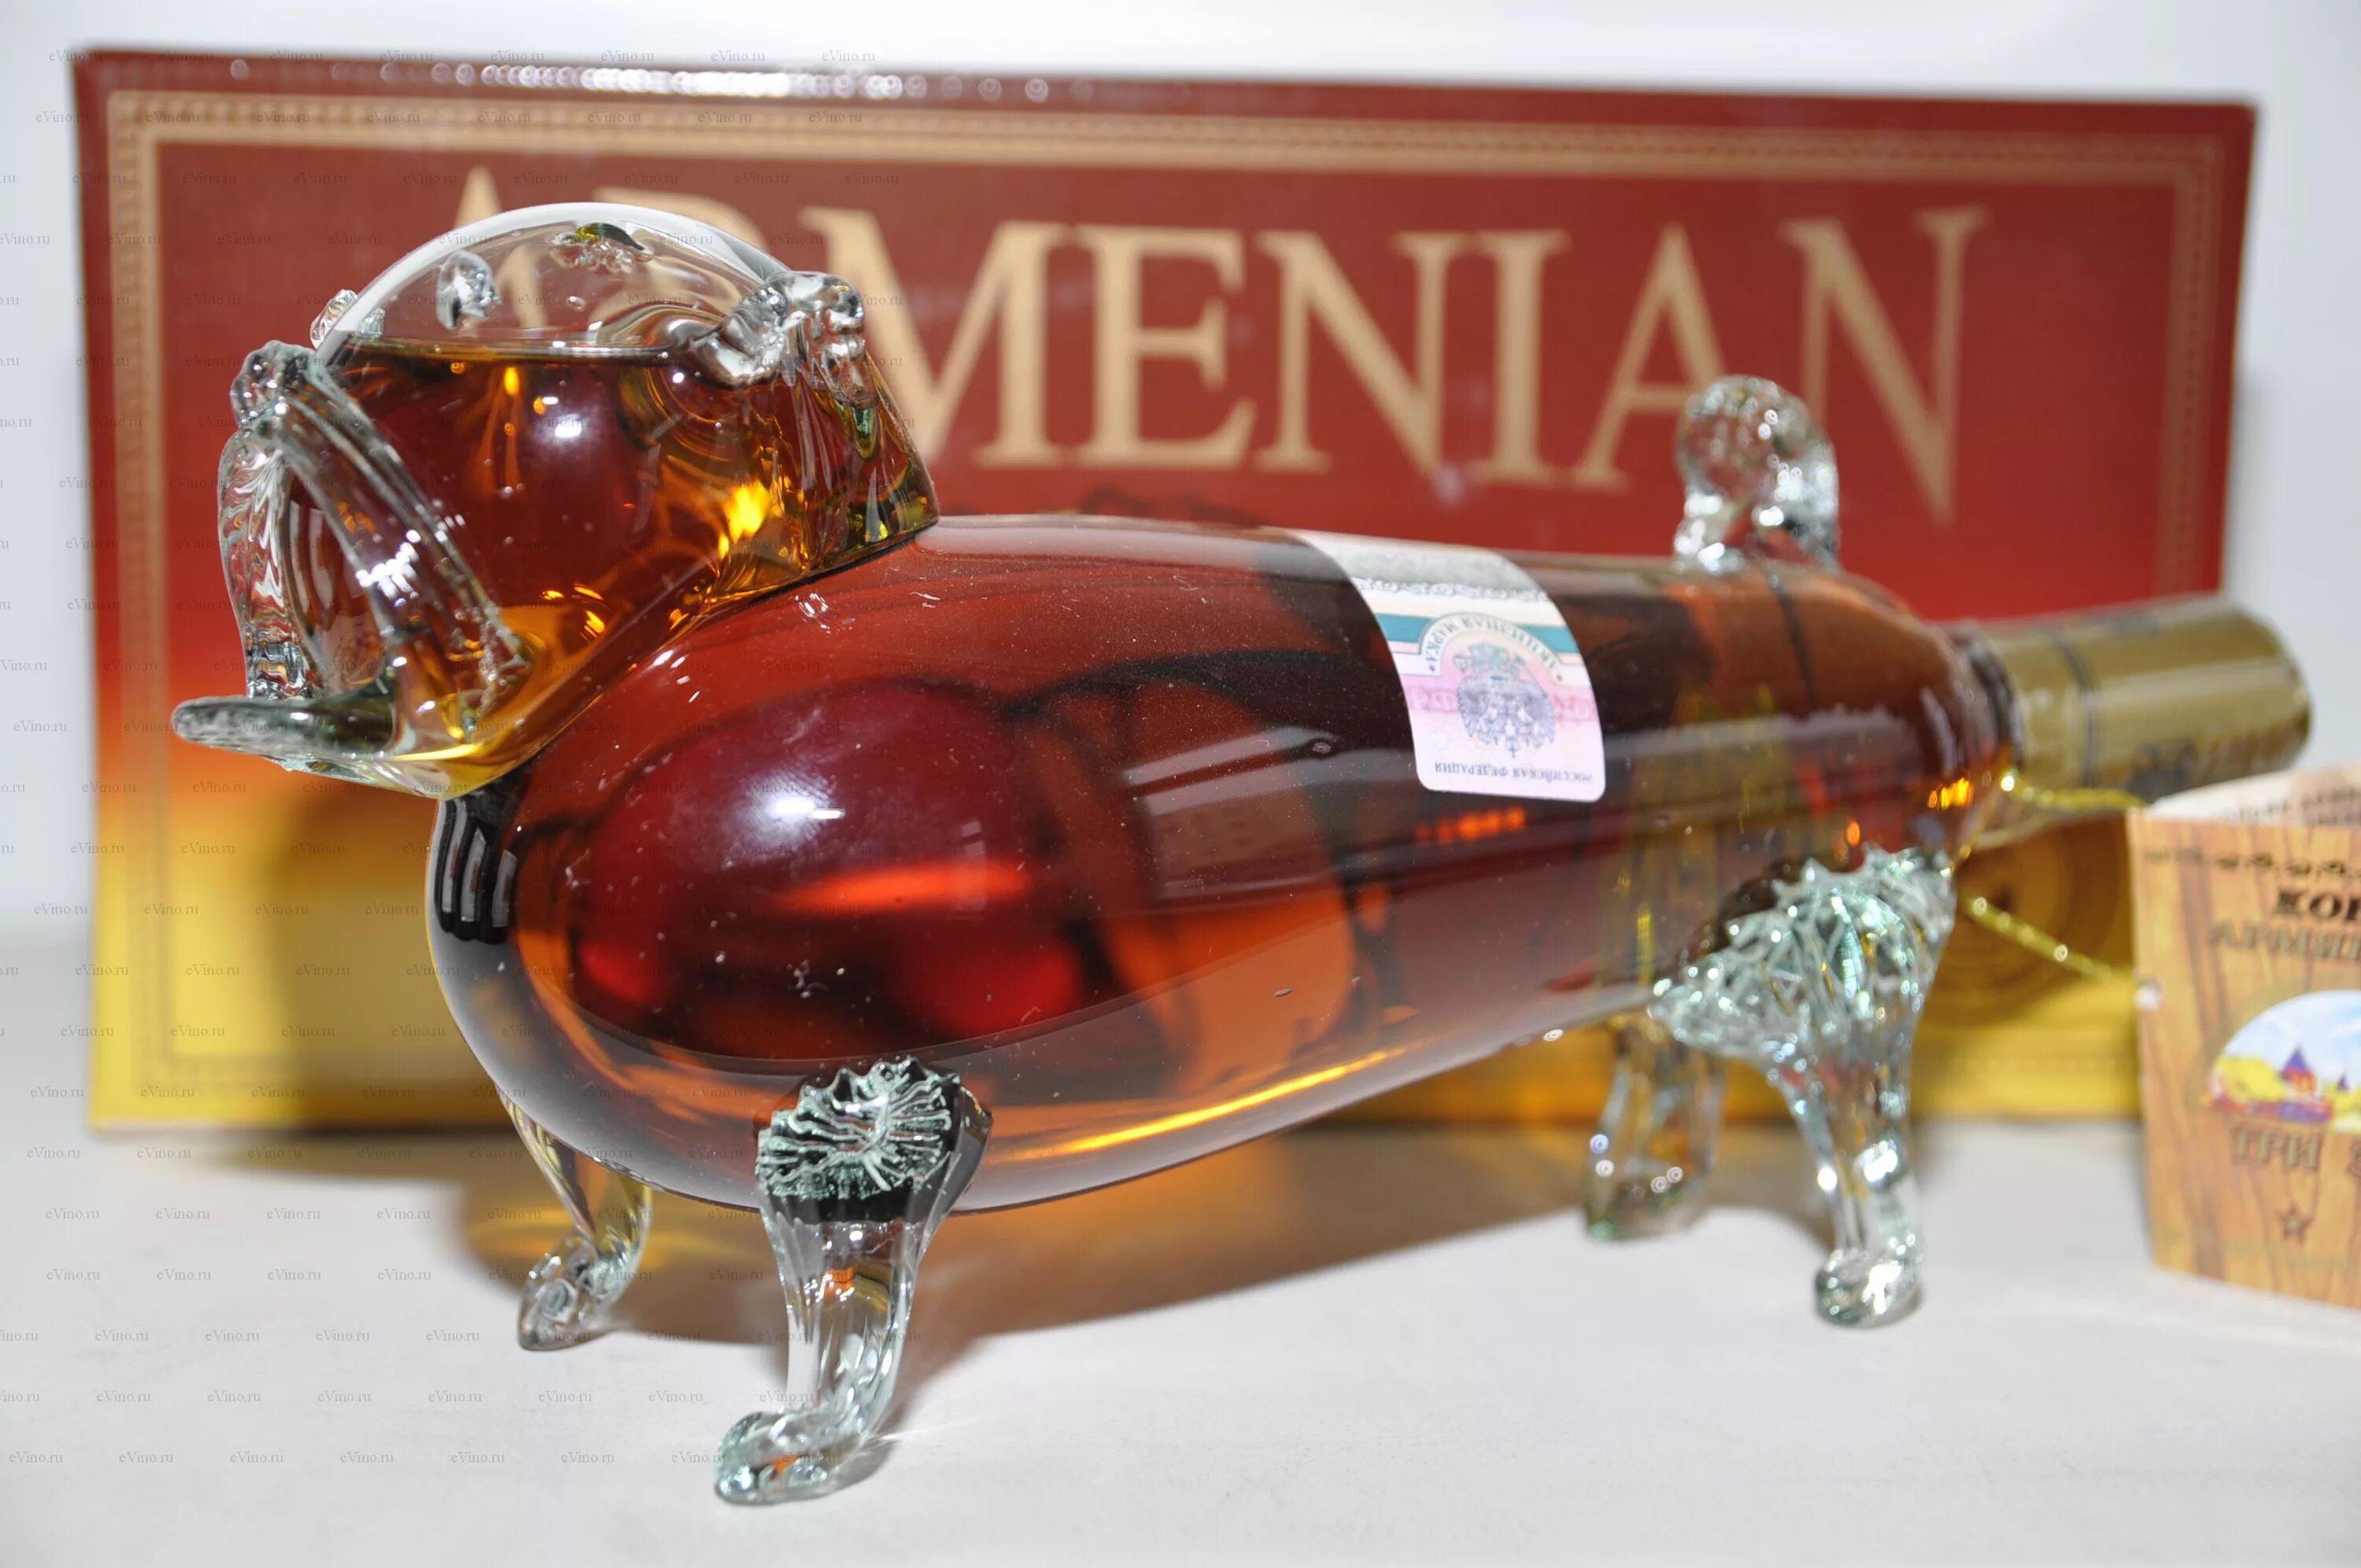 Армянский коньяк сувенирный Иджеванский. Купить коньяк в интернет магазине